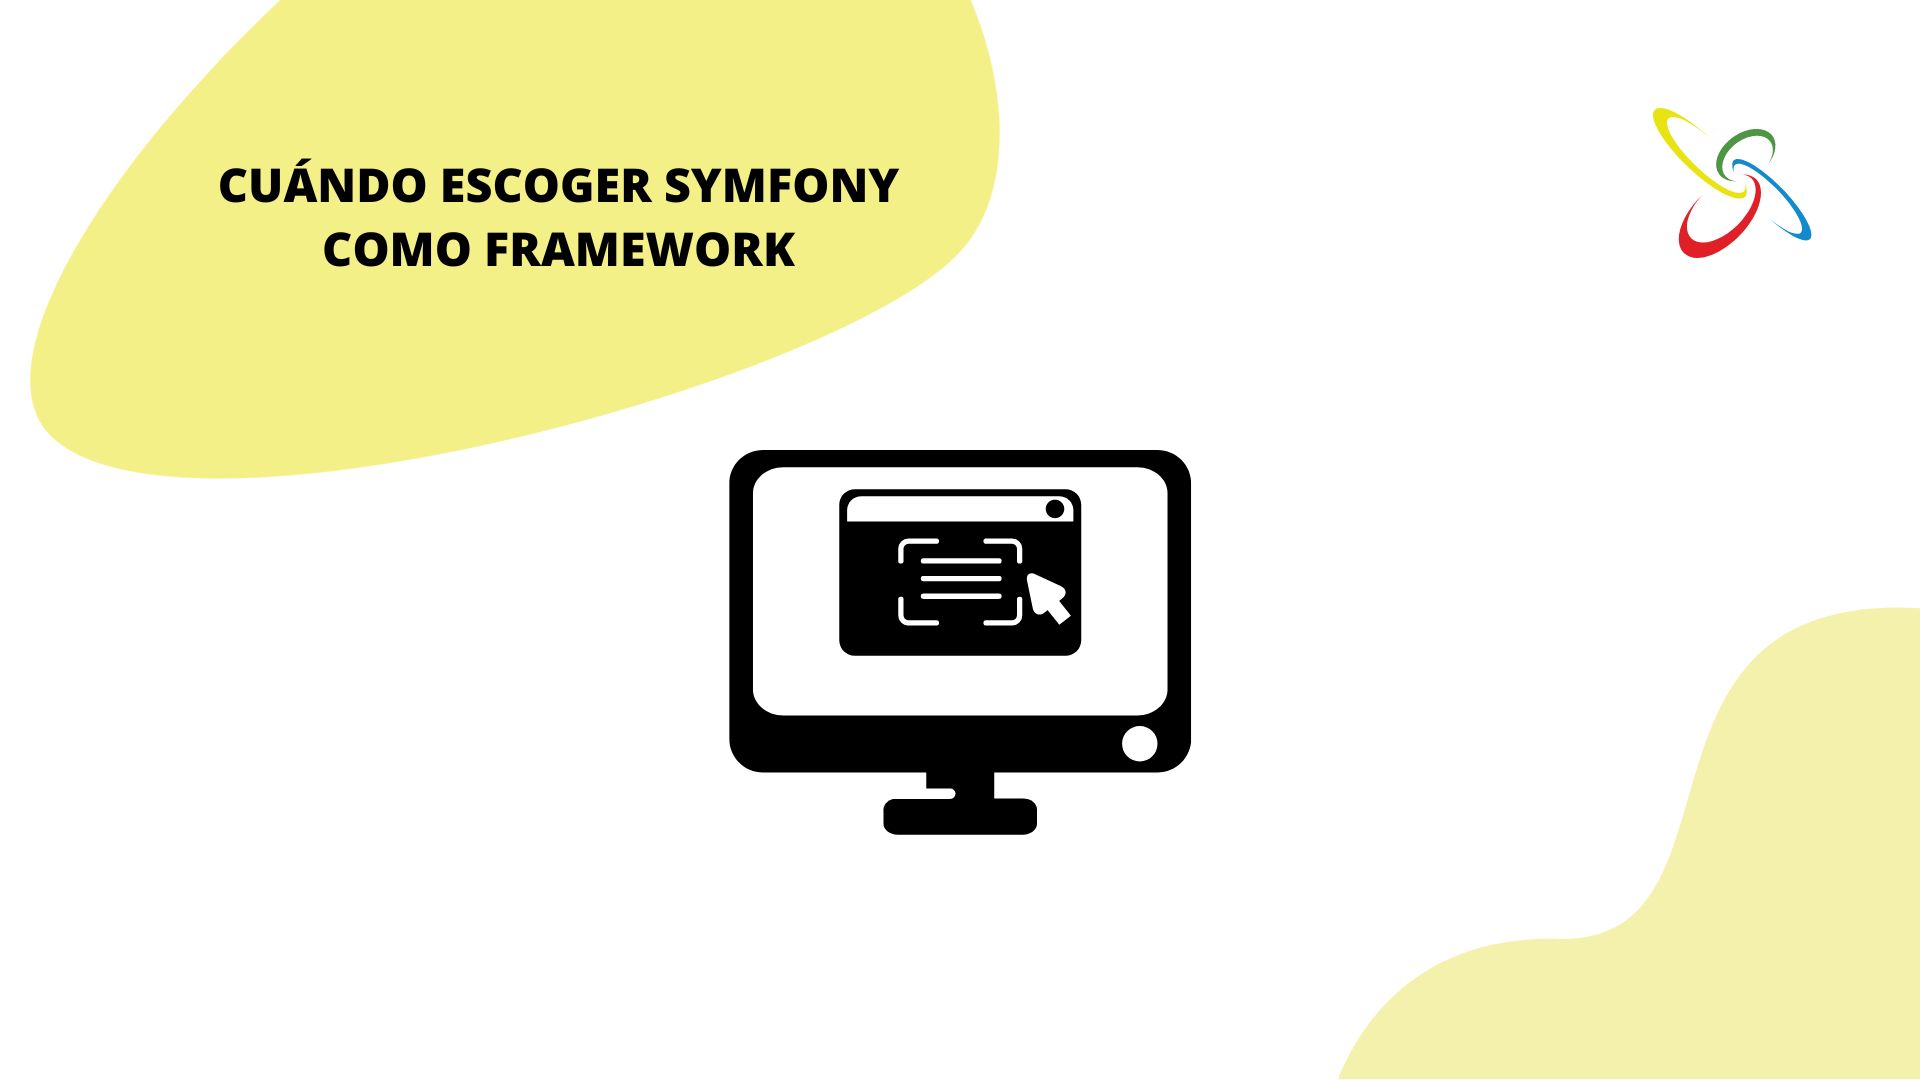 Quan escollir Symfony com a framework per al teu projecte web?